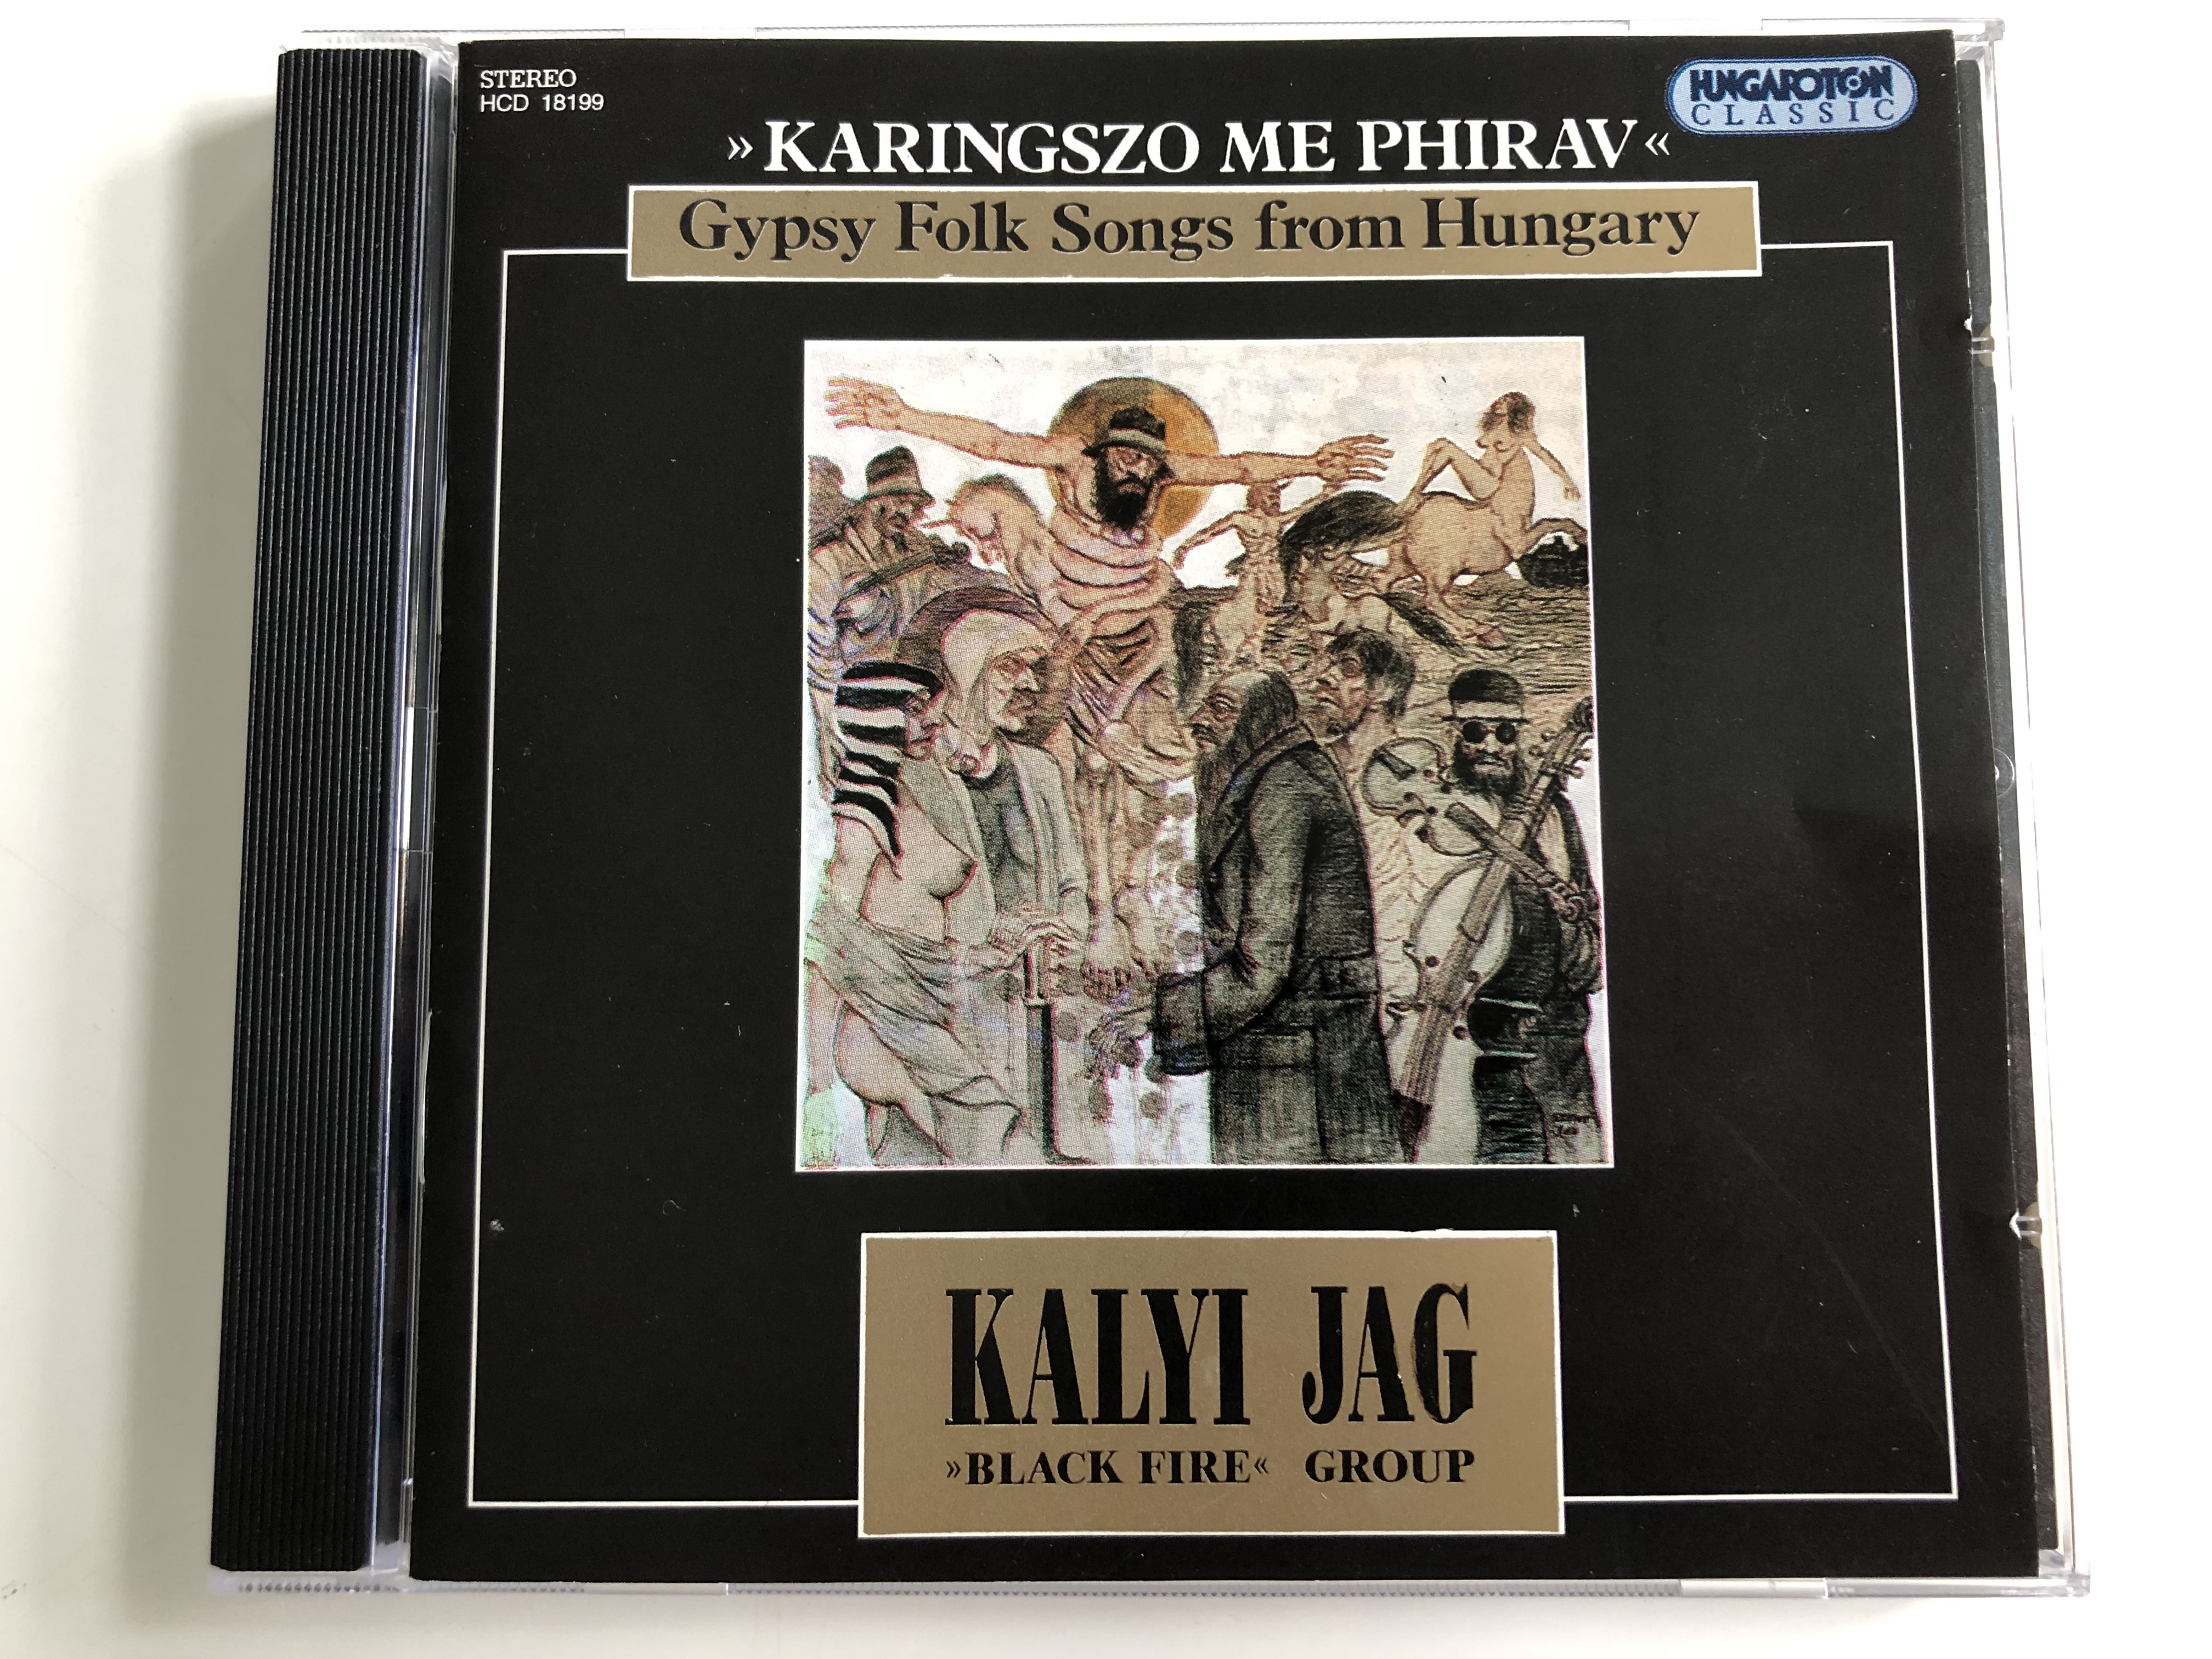 -karingszo-me-phirav-gypsy-folk-songs-from-hungary-kalyi-jag-black-fire-group-hungaroton-audio-cd-1995-stereo-hcd-18199-1-.jpg